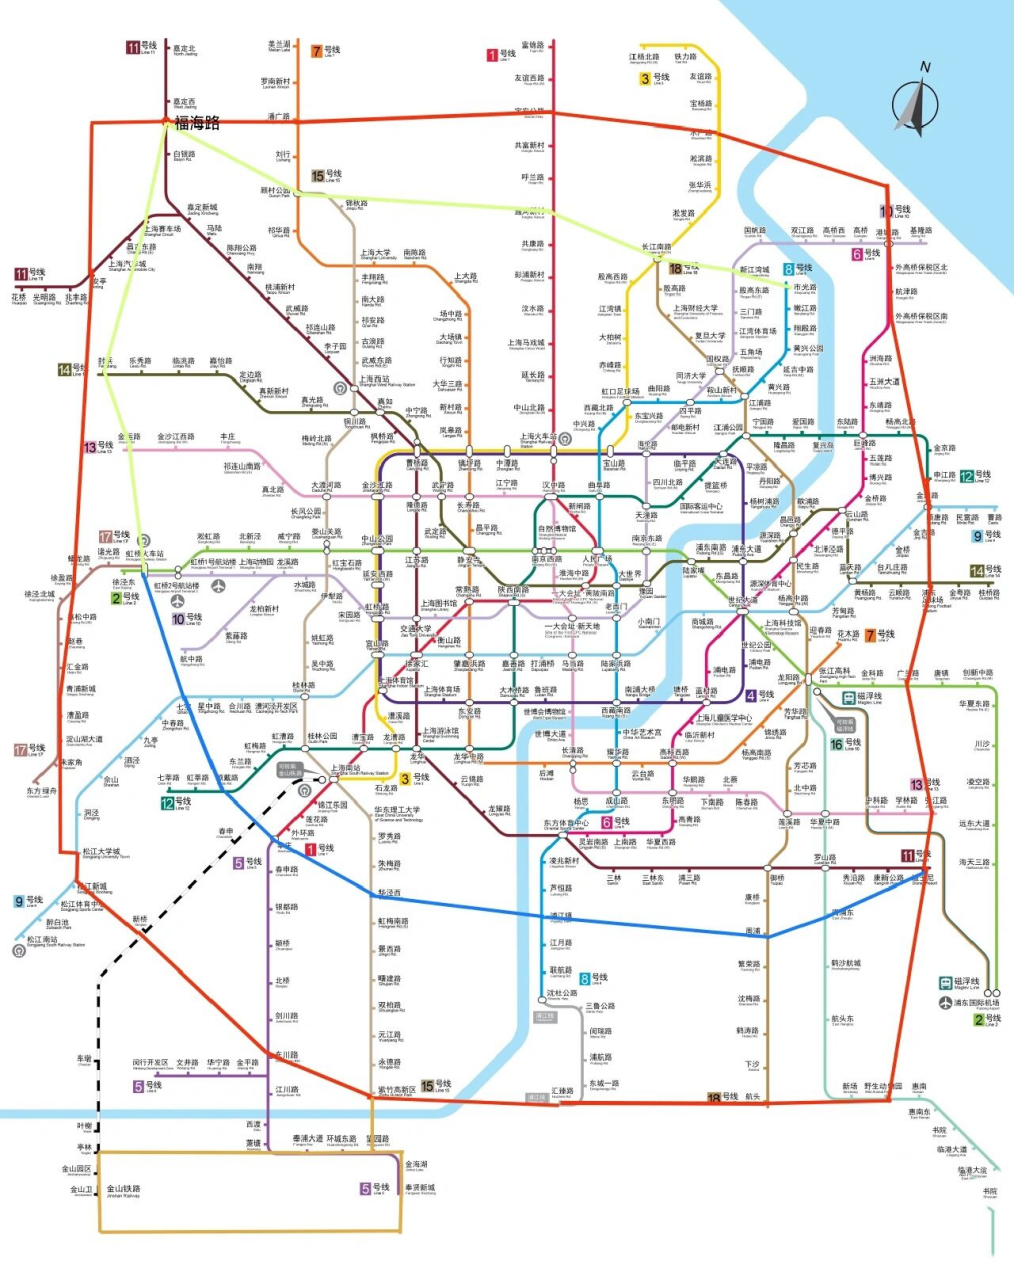 我规划的上海新地铁线路2:金奉(闵)环线 01金线:金奉(闵)环线:(见图